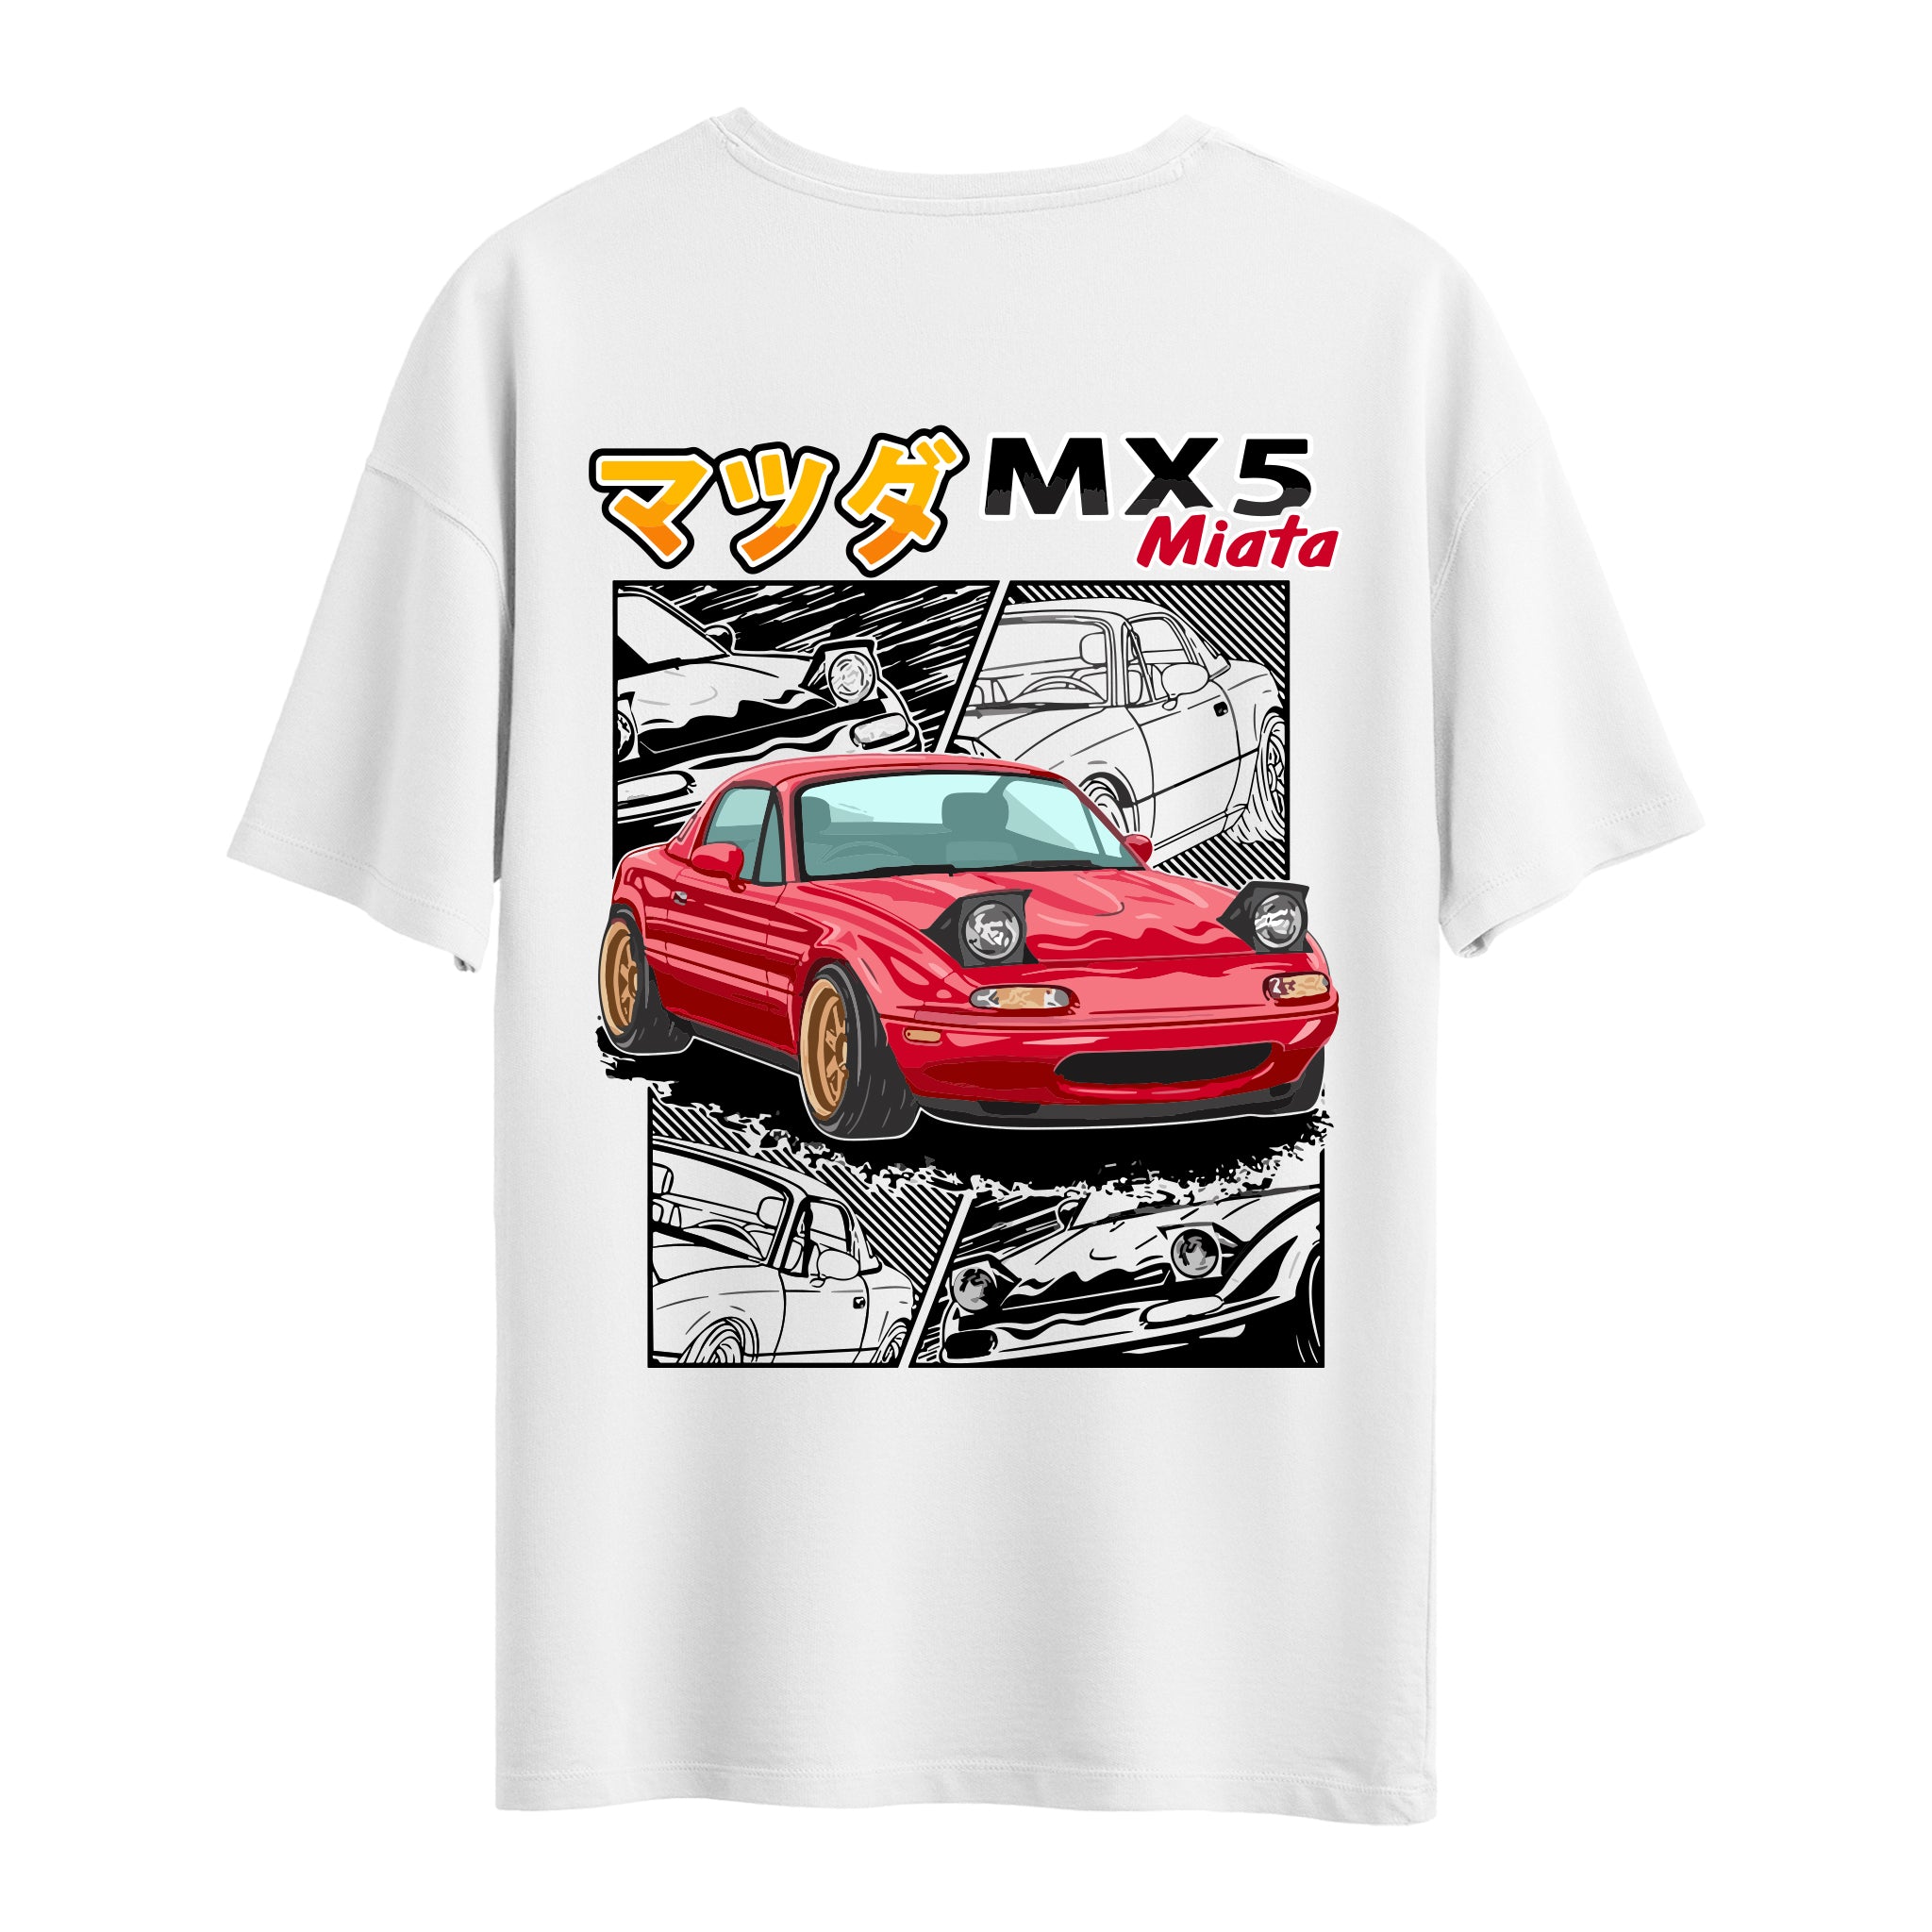 MX5 Miata - Oversize T-Shirt